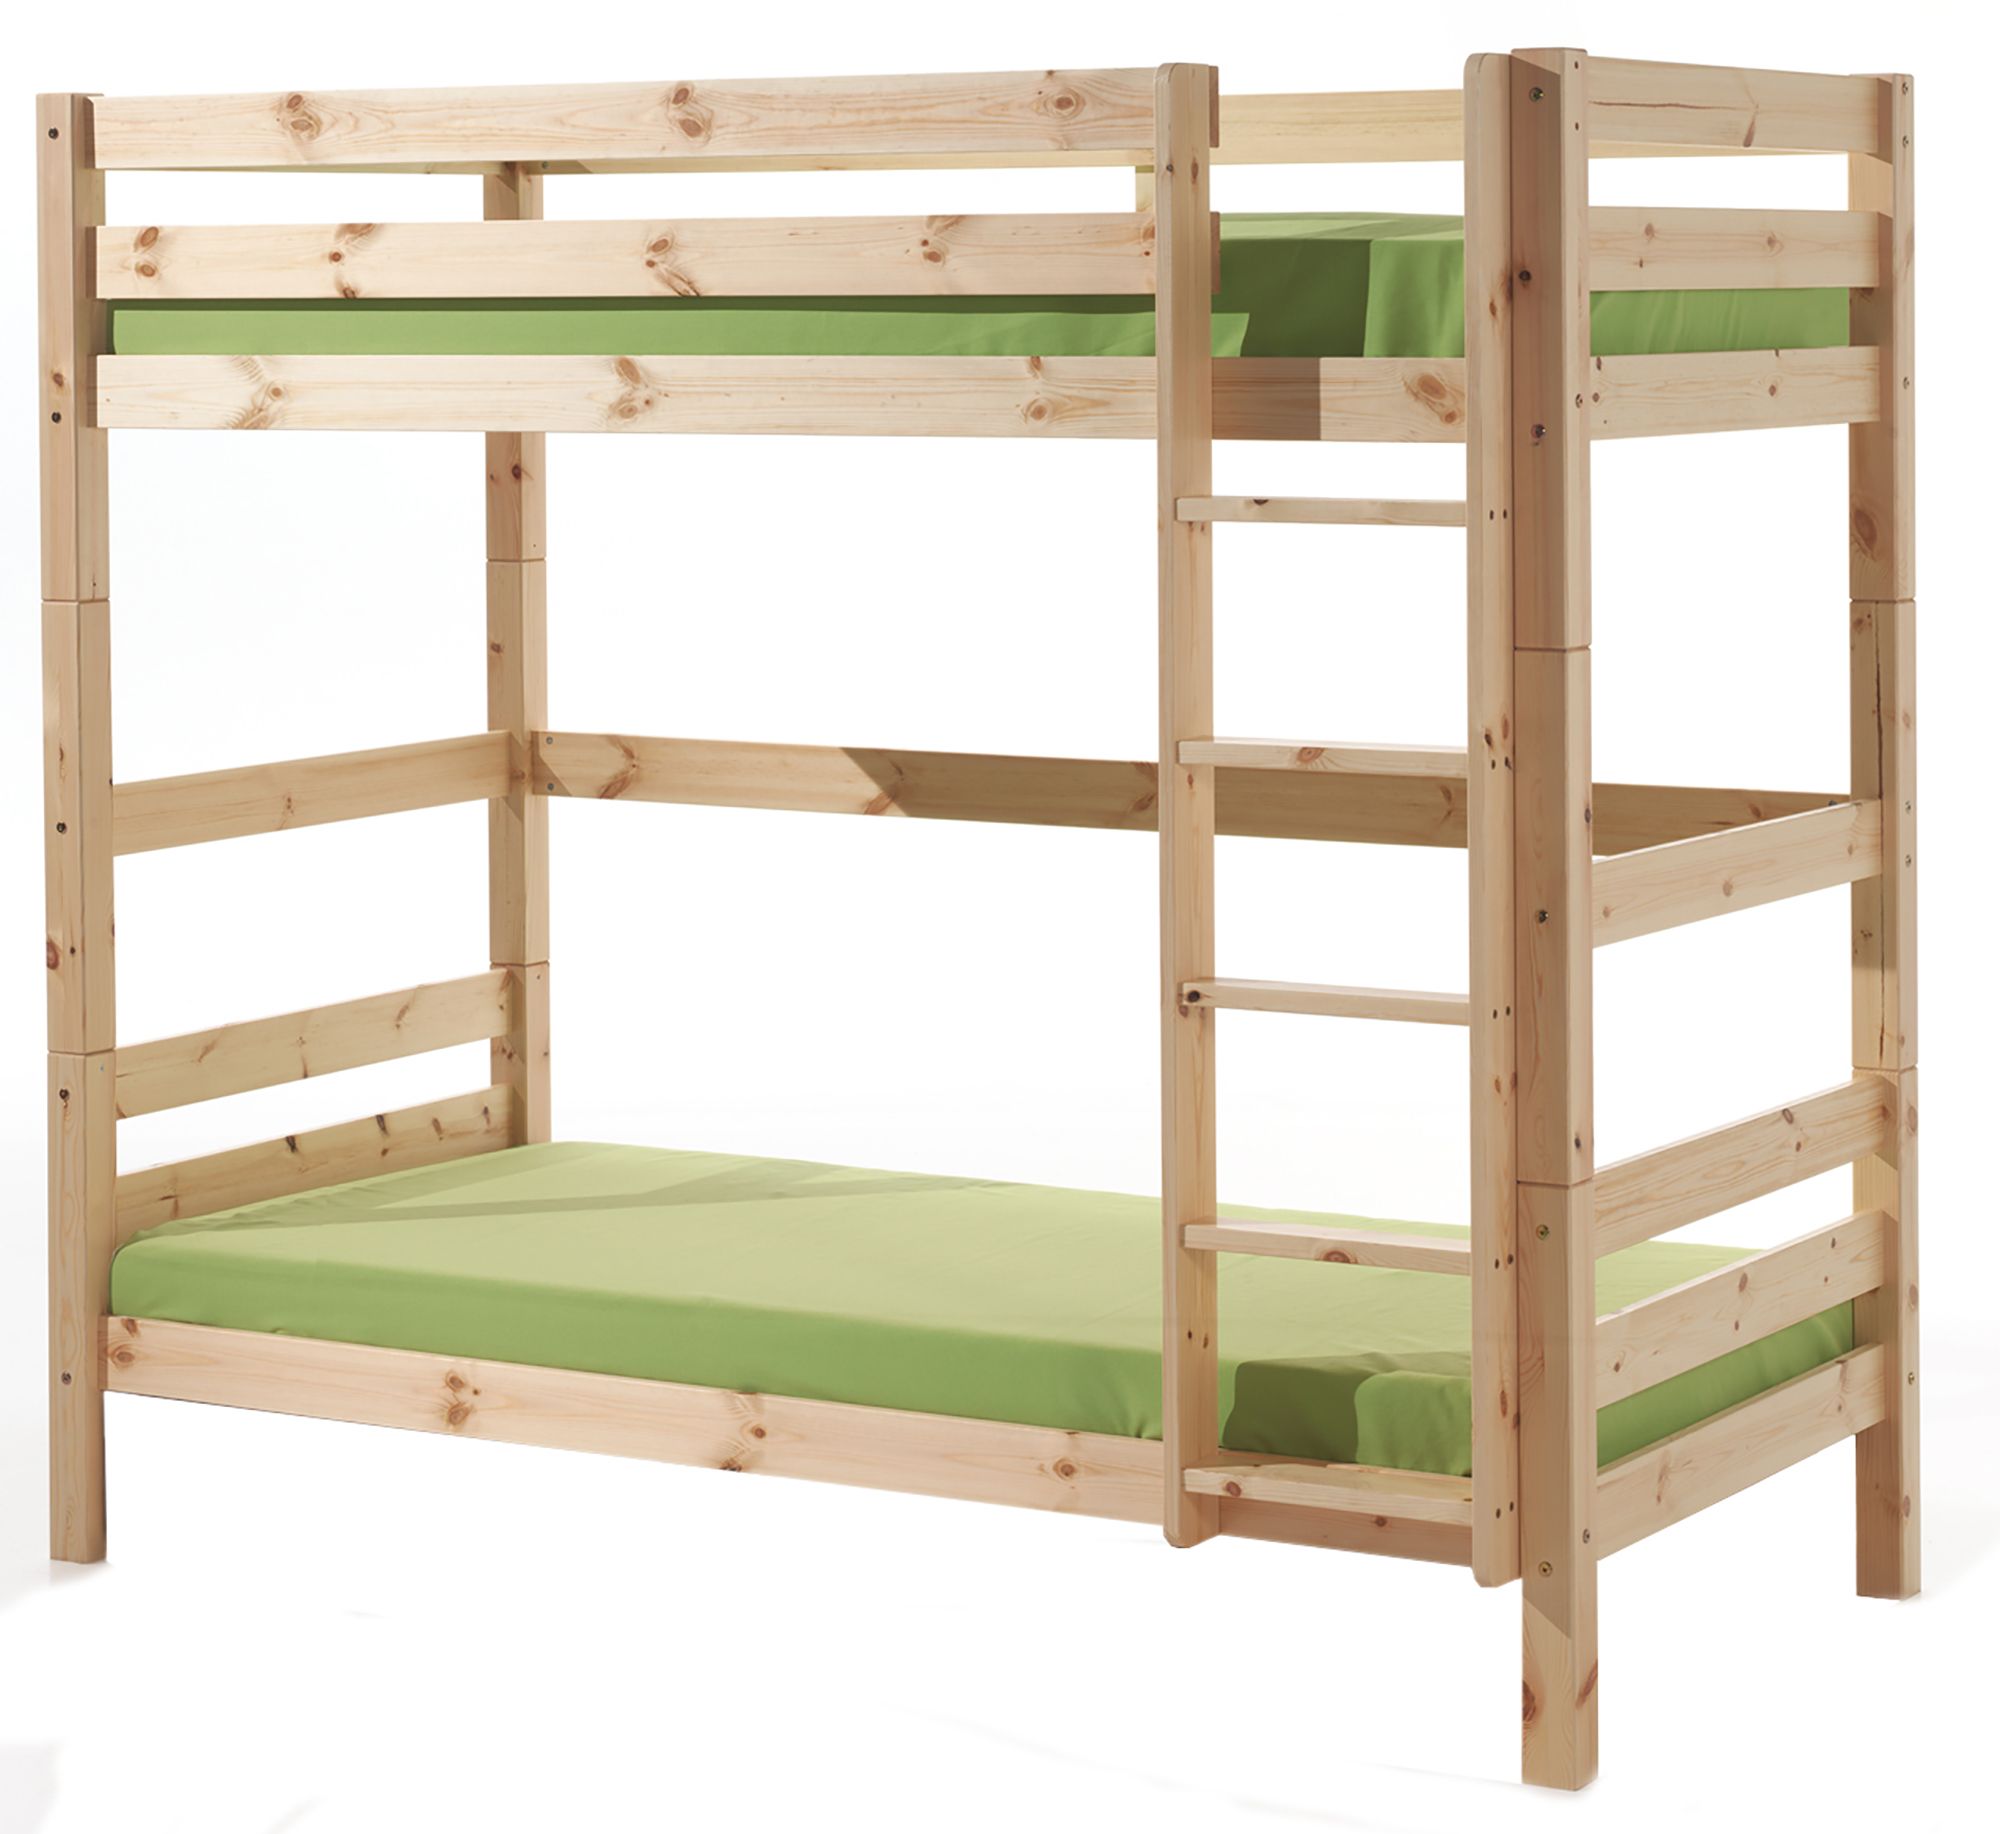 Vipack Pino Extra Tall Bunk Bed Natural, Tall Bunk Beds